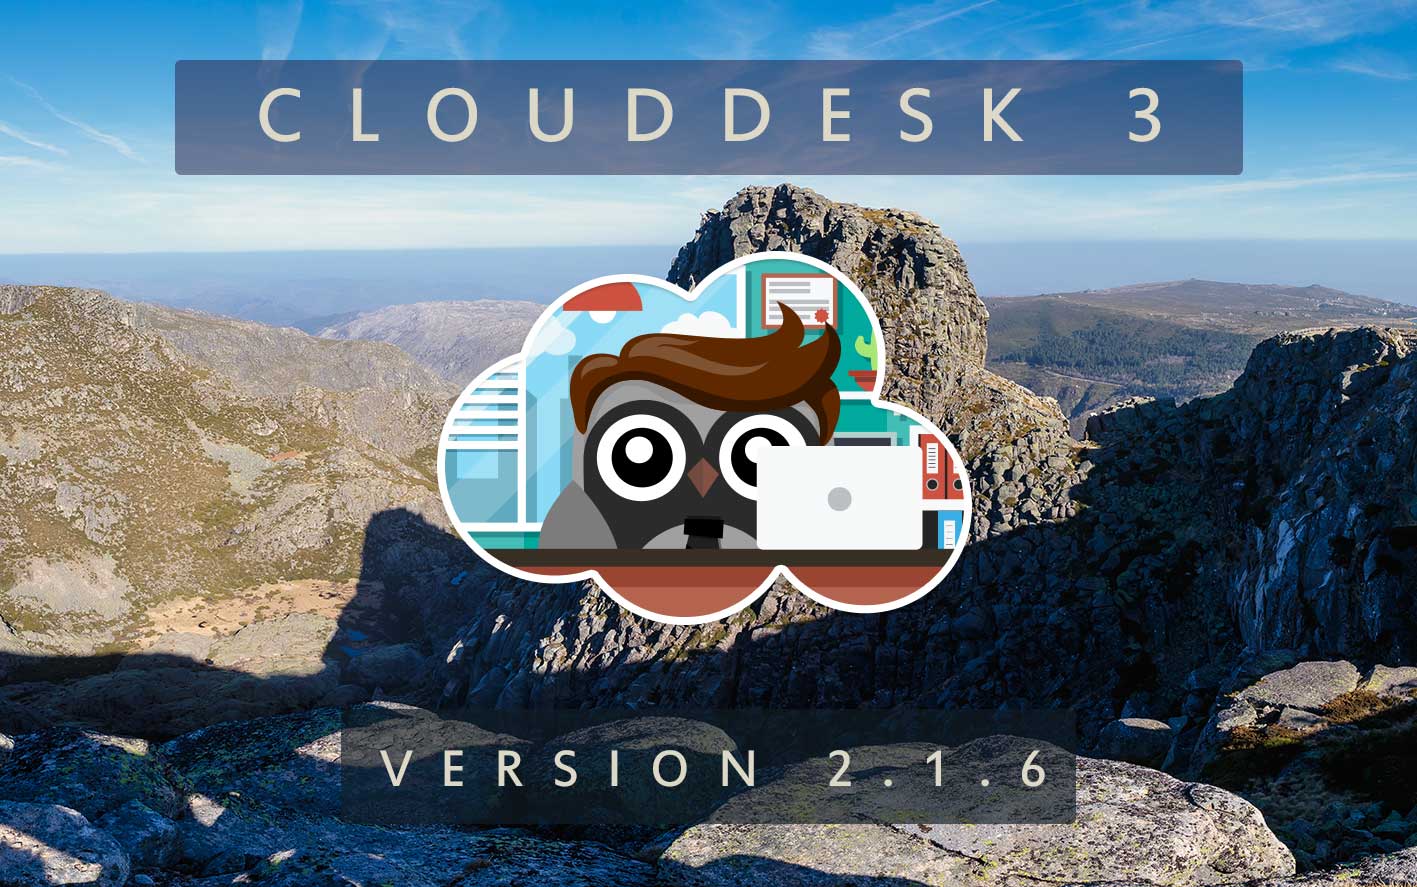 Cloud Desk 3 - Version 2.1.6